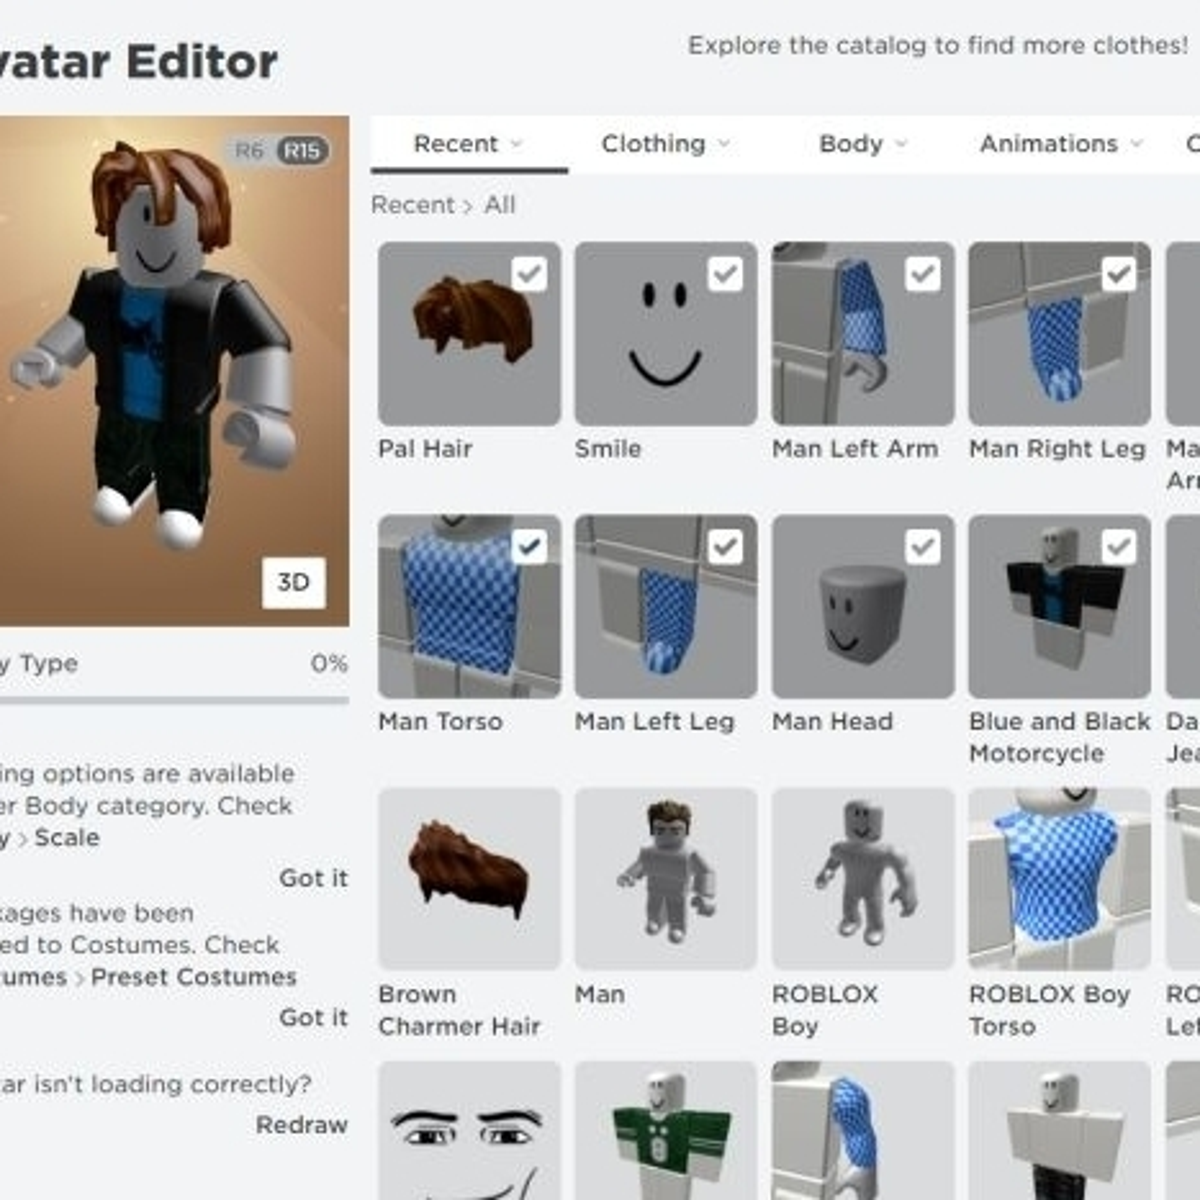 Roblox - Avatar Maker - Como criar e editar o avatar de Roblox